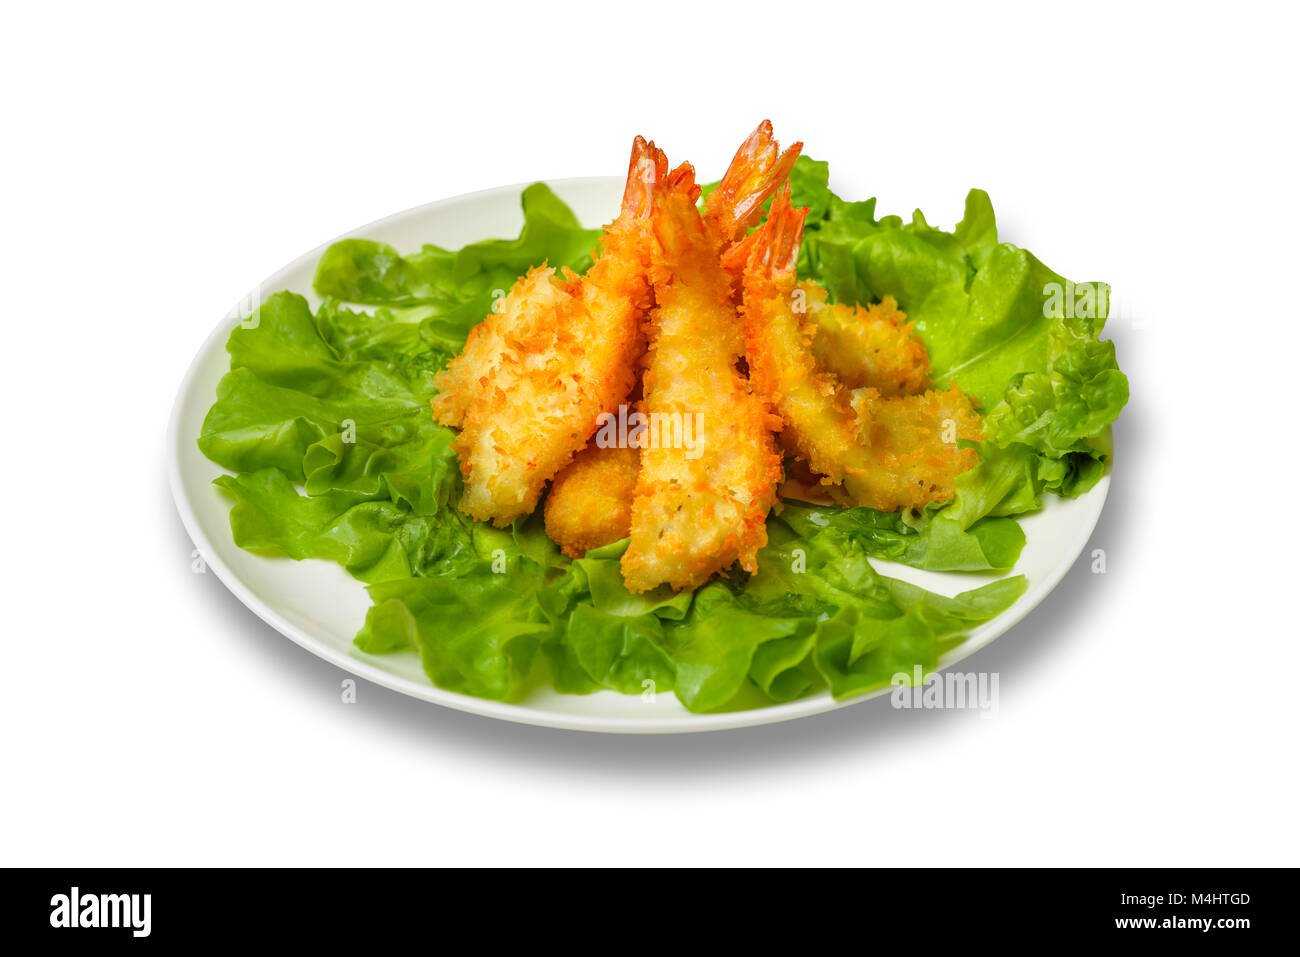 Crevettes frites avec des feuilles de laitue sur un fond blanc Banque D'Images